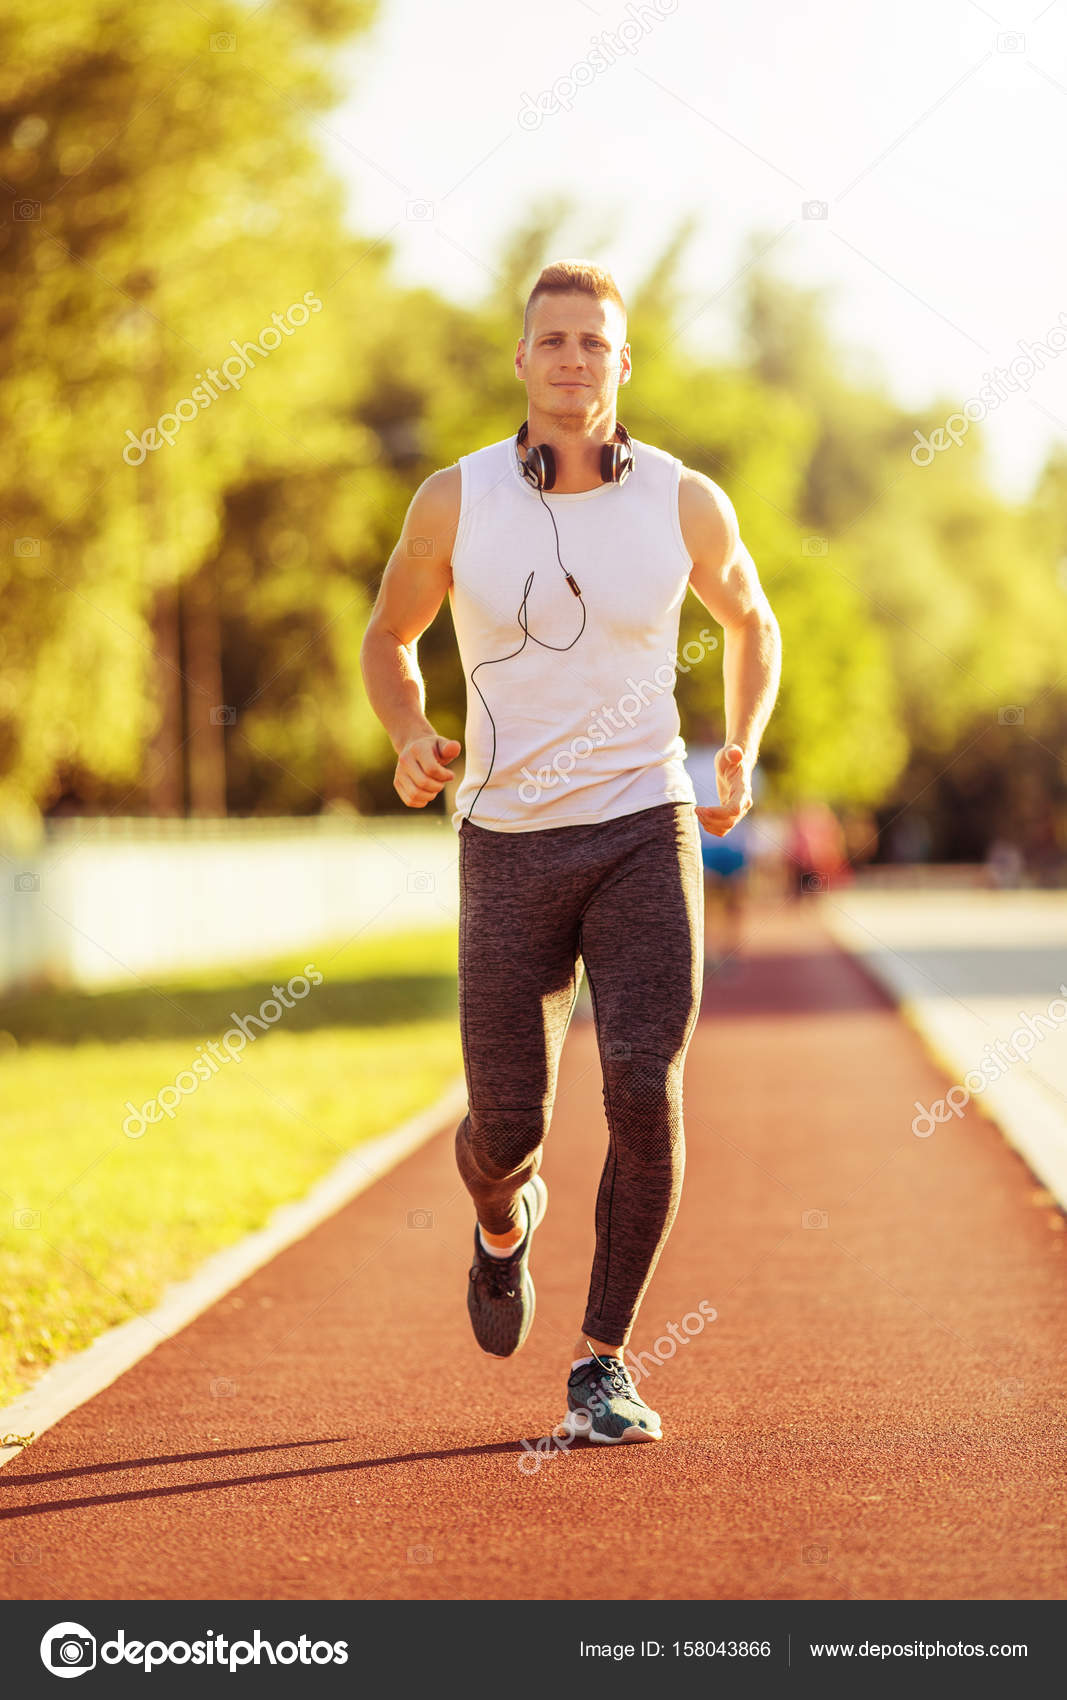 îmbunătățiți erecția prin jogging